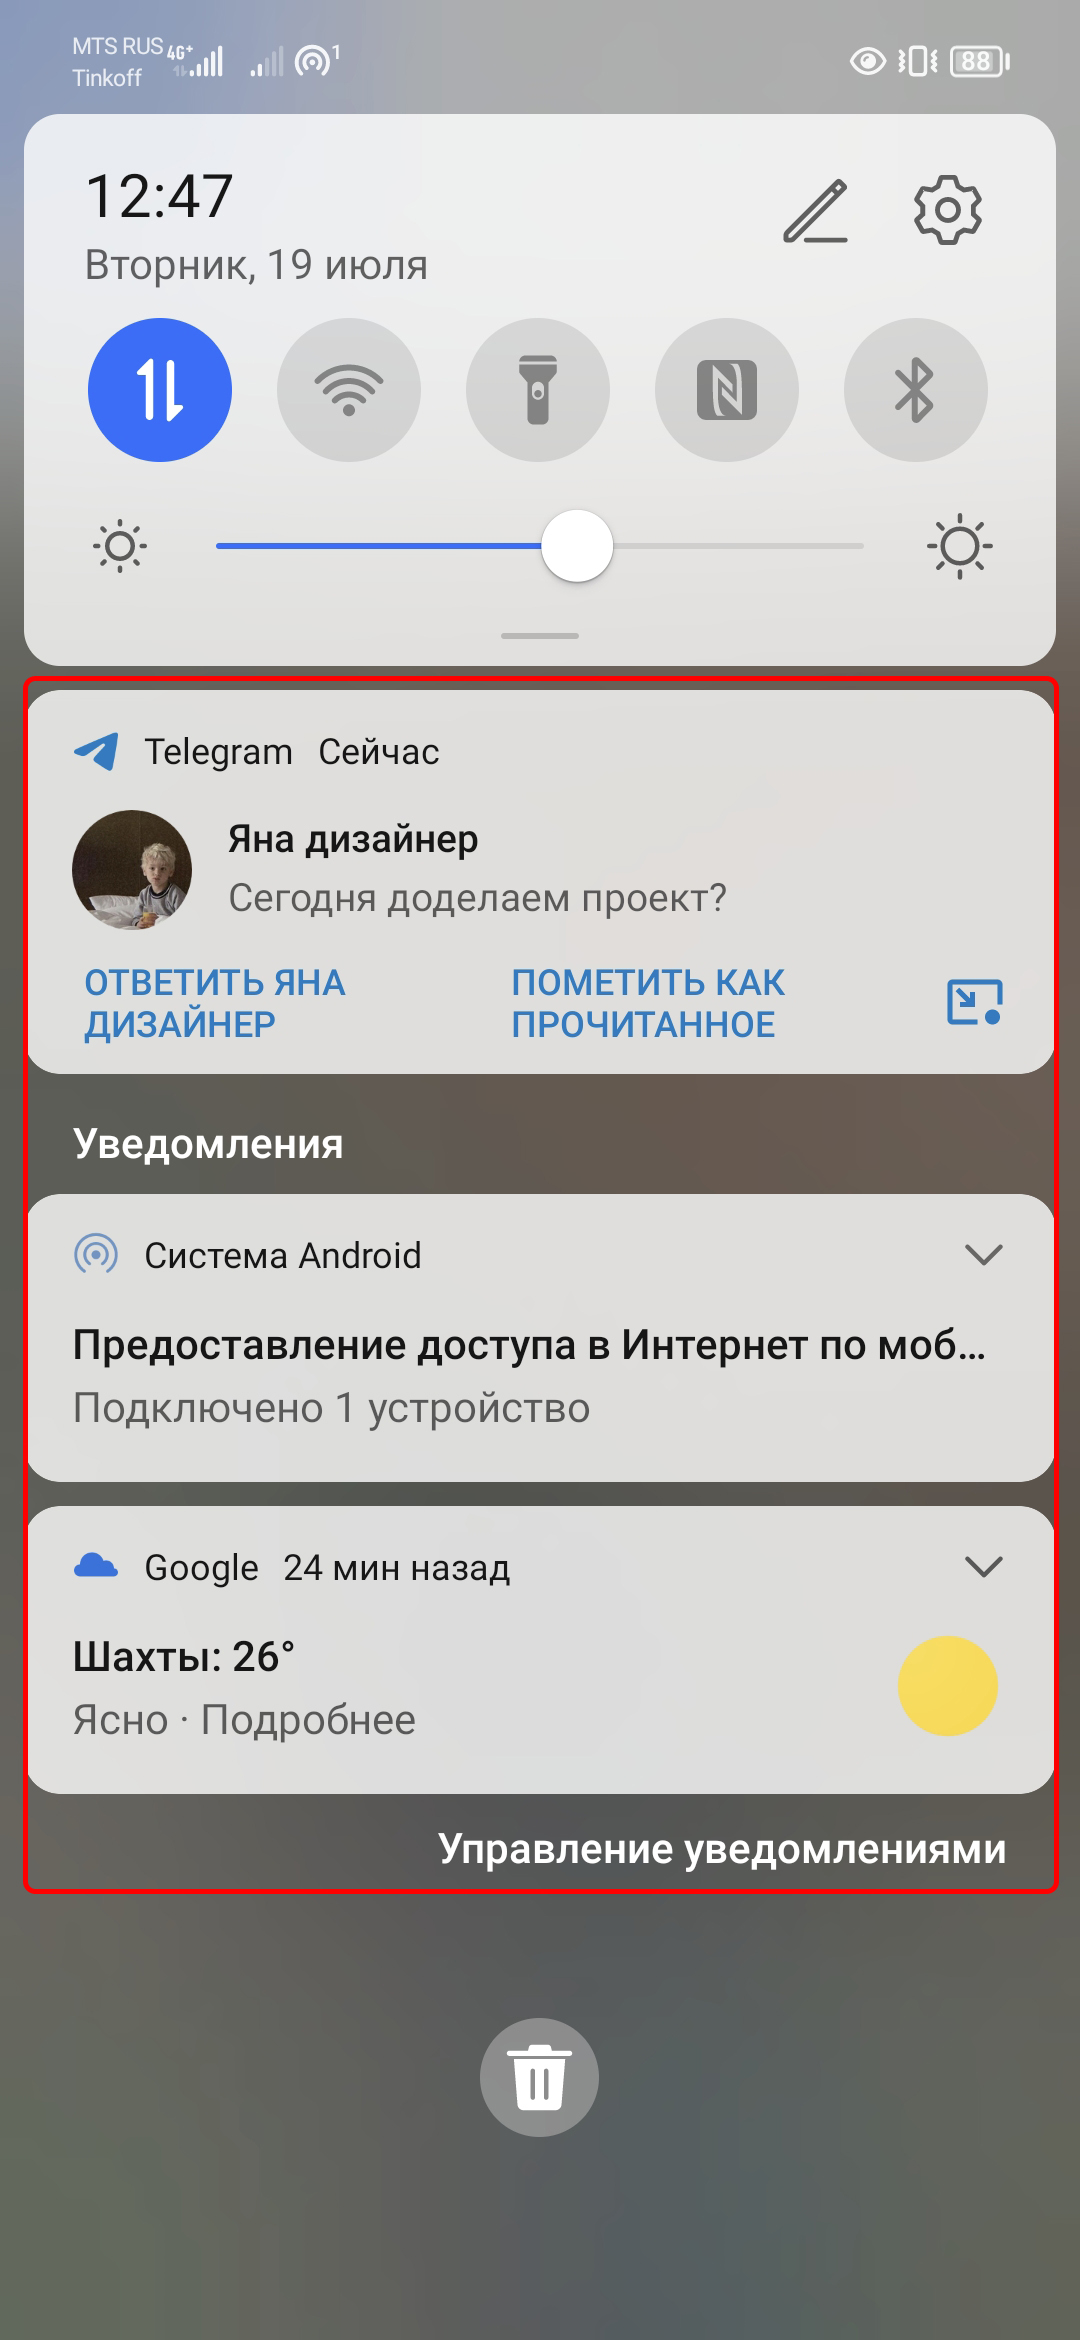 Удаление эмблемы OneNote с начального экрана Android